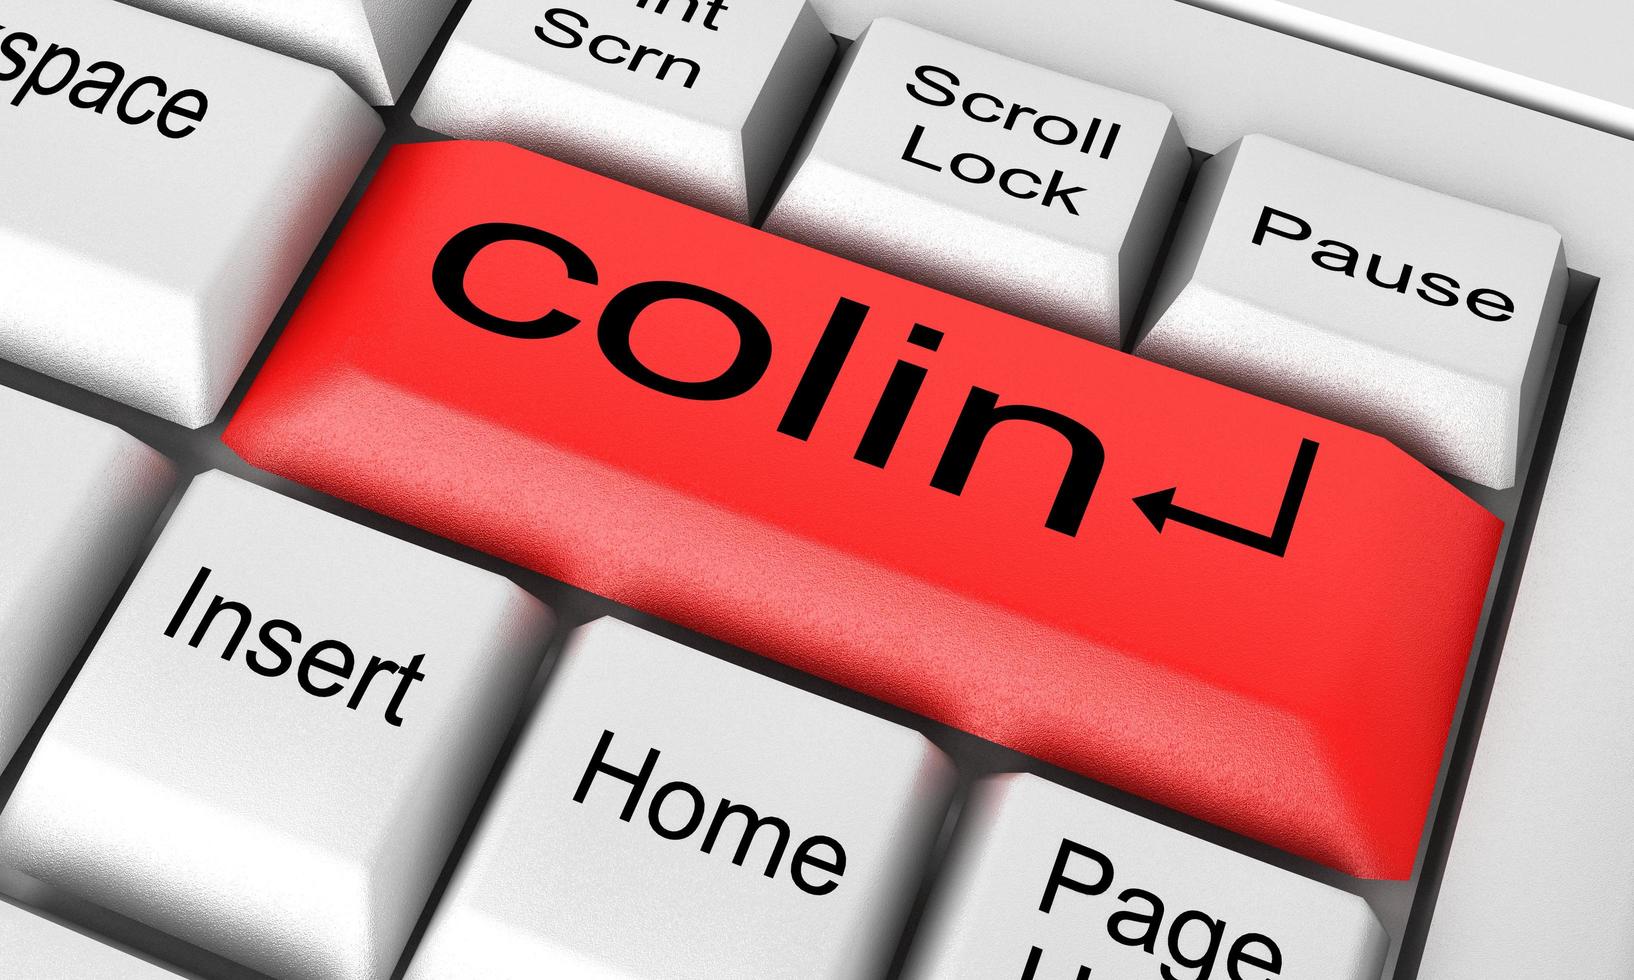 Colin-Wort auf weißer Tastatur foto